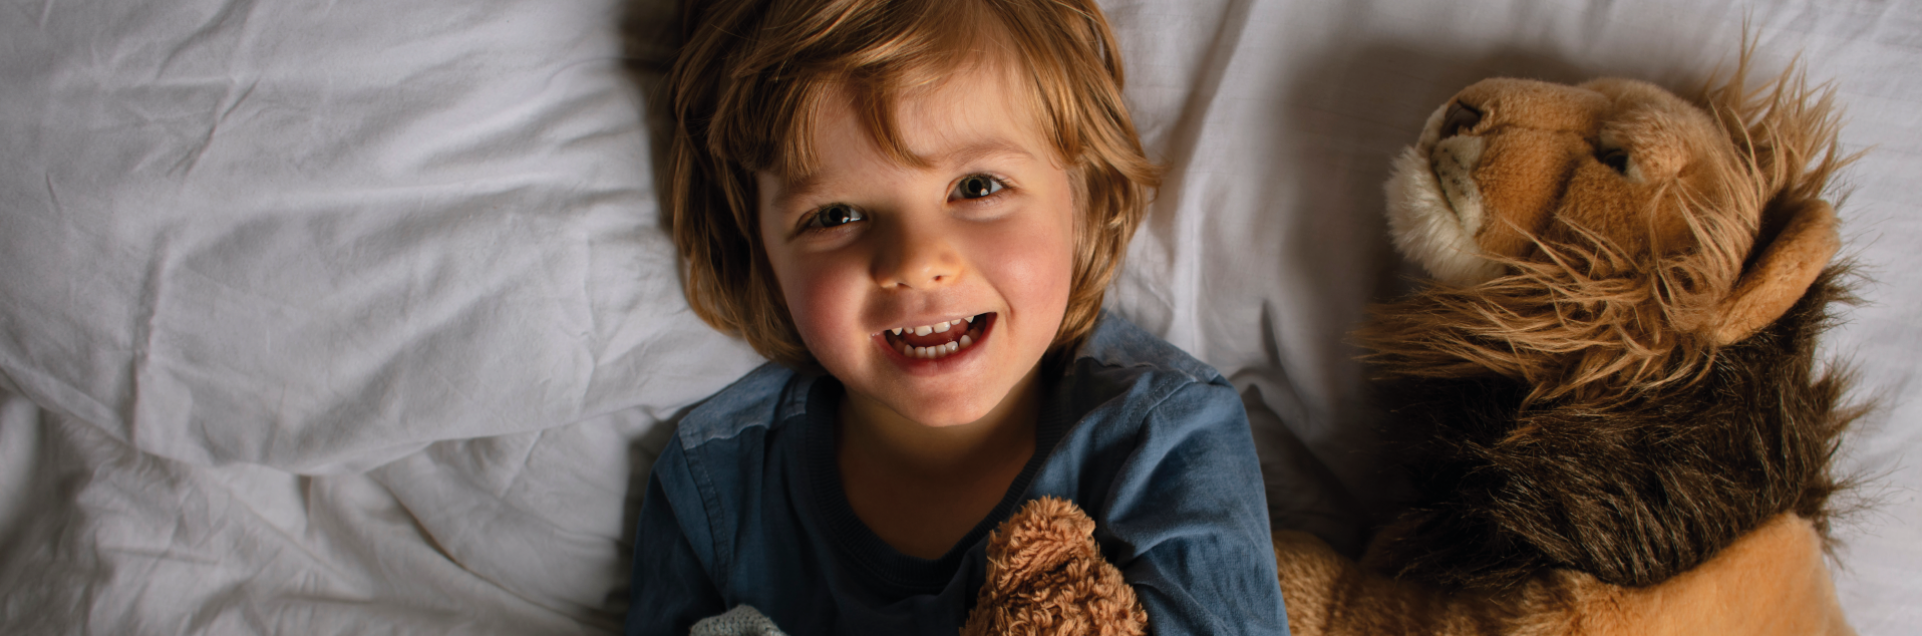 Faringitis en niños: causas, síntomas y tratamiento 